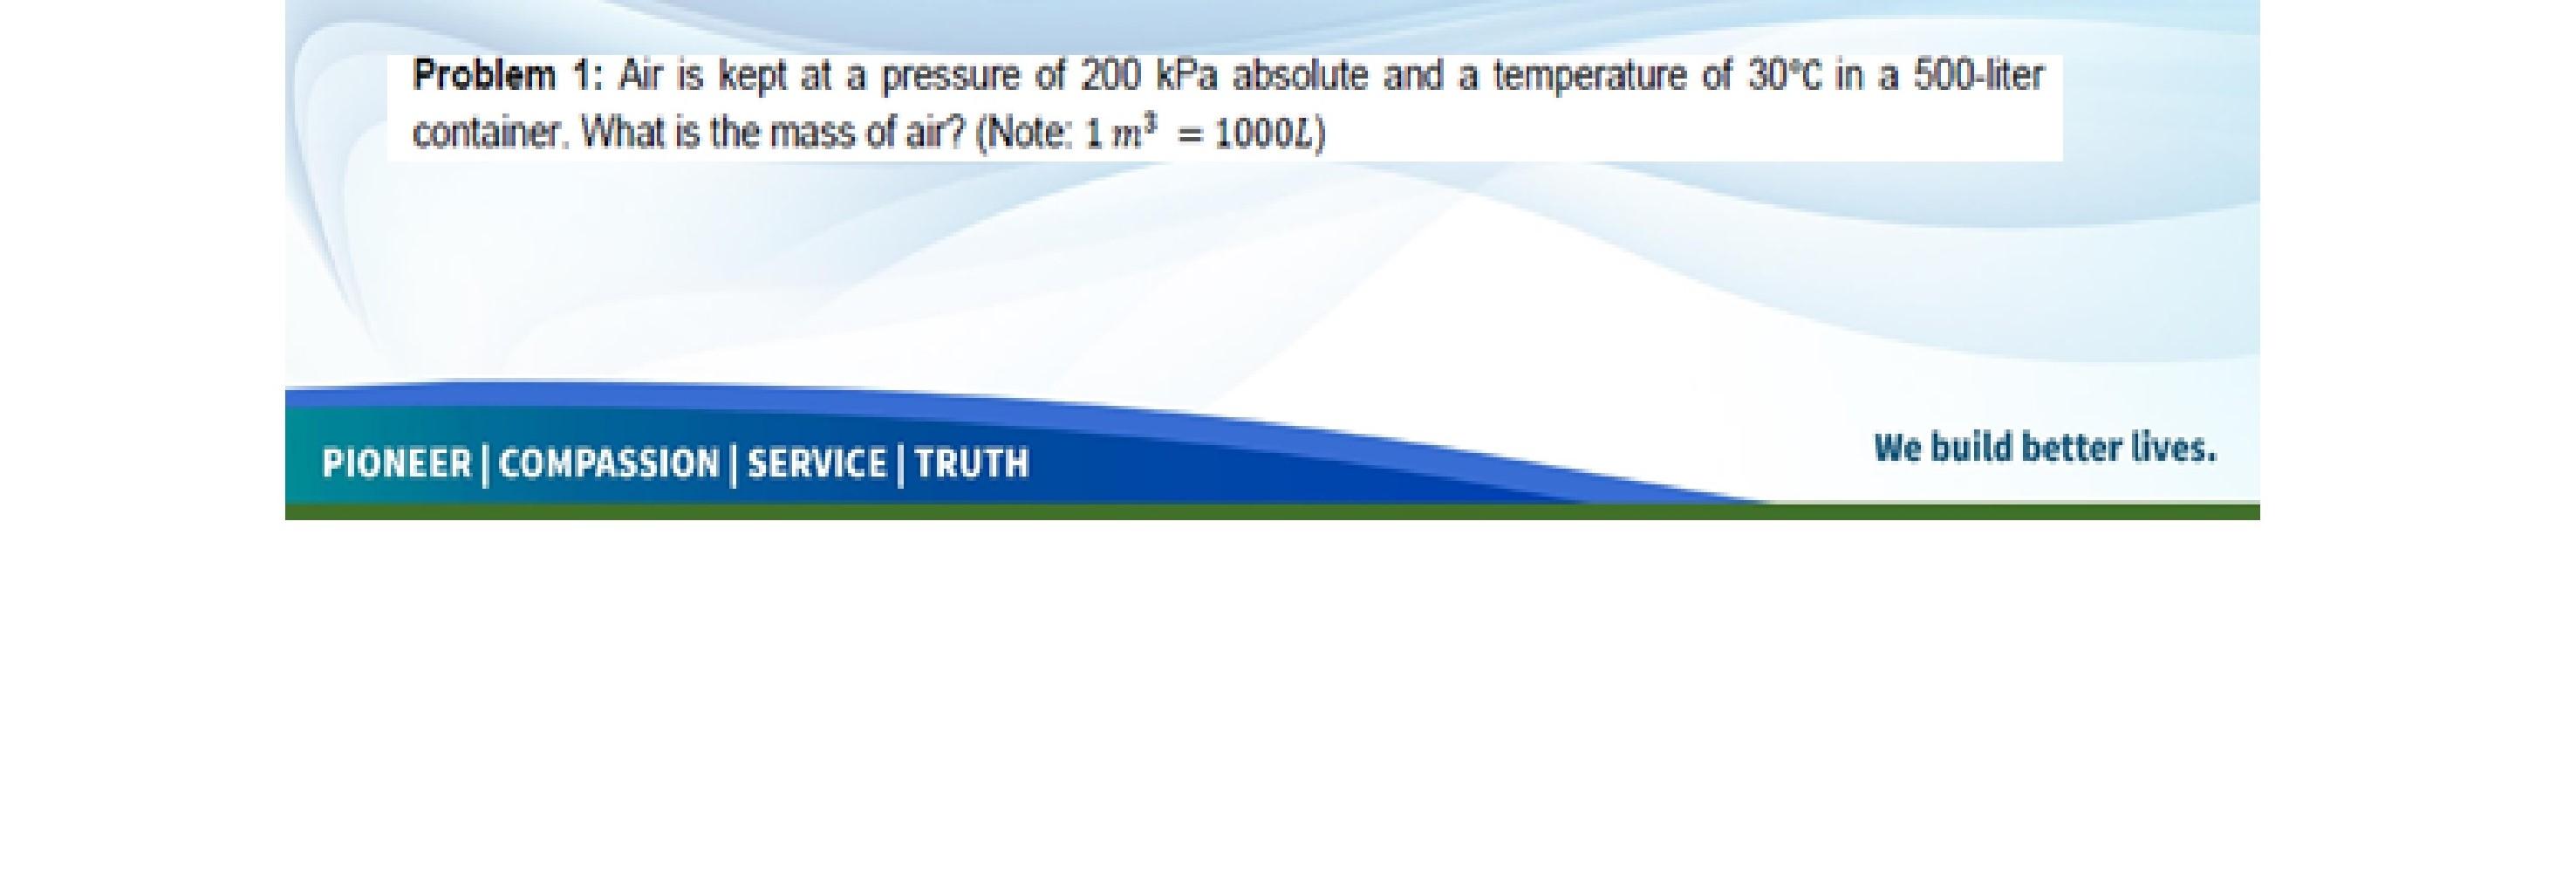 regisseur envelop entiteit Solved Problem 1: Air is kept at a pressure of 200 kPa | Chegg.com